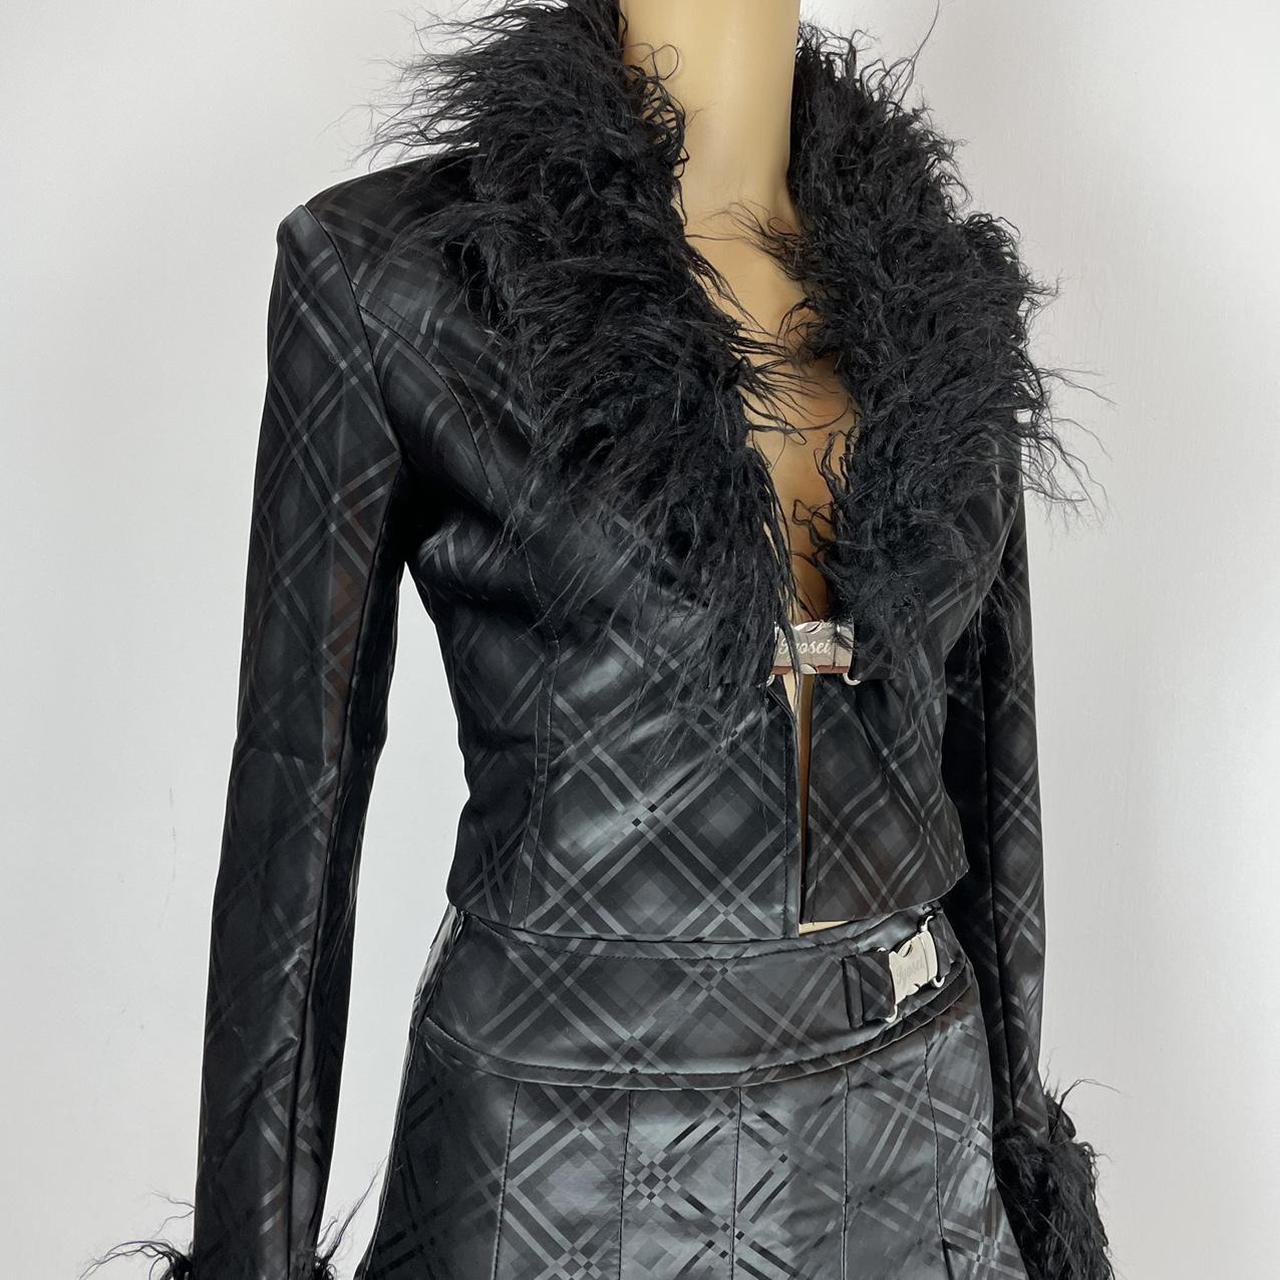 Authentic Jyosei black plaids faux leather jacket... - Depop